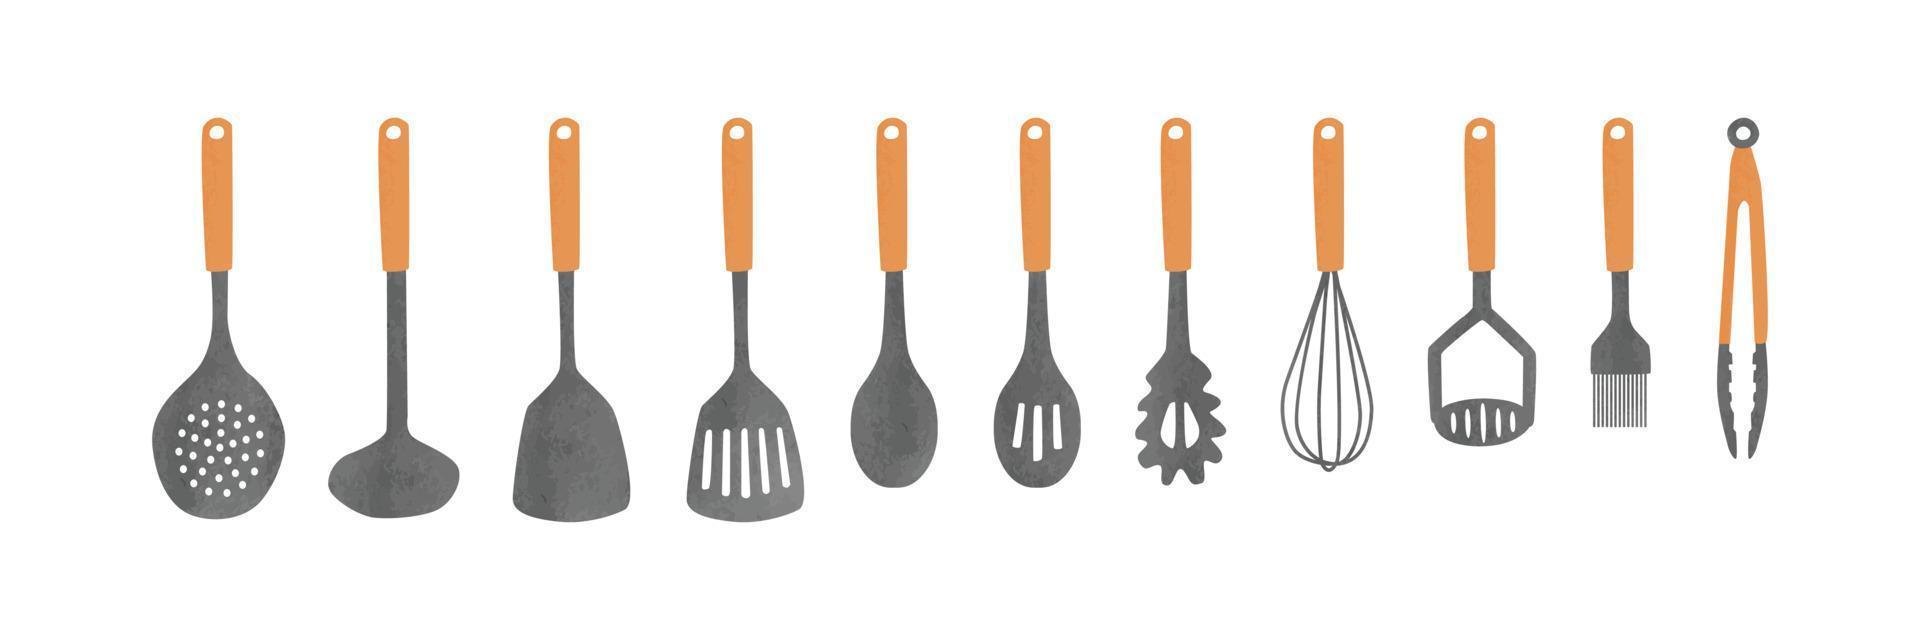 conjunto de herramientas de cocina con imágenes prediseñadas de mango de madera. herramientas de cocina conjunto vector acuarela aislado en blanco. espumadera, cucharón, espátula ranurada, cuchara, servidor de pasta, batidor, machacador de papas, cepillo para rociar, pinzas